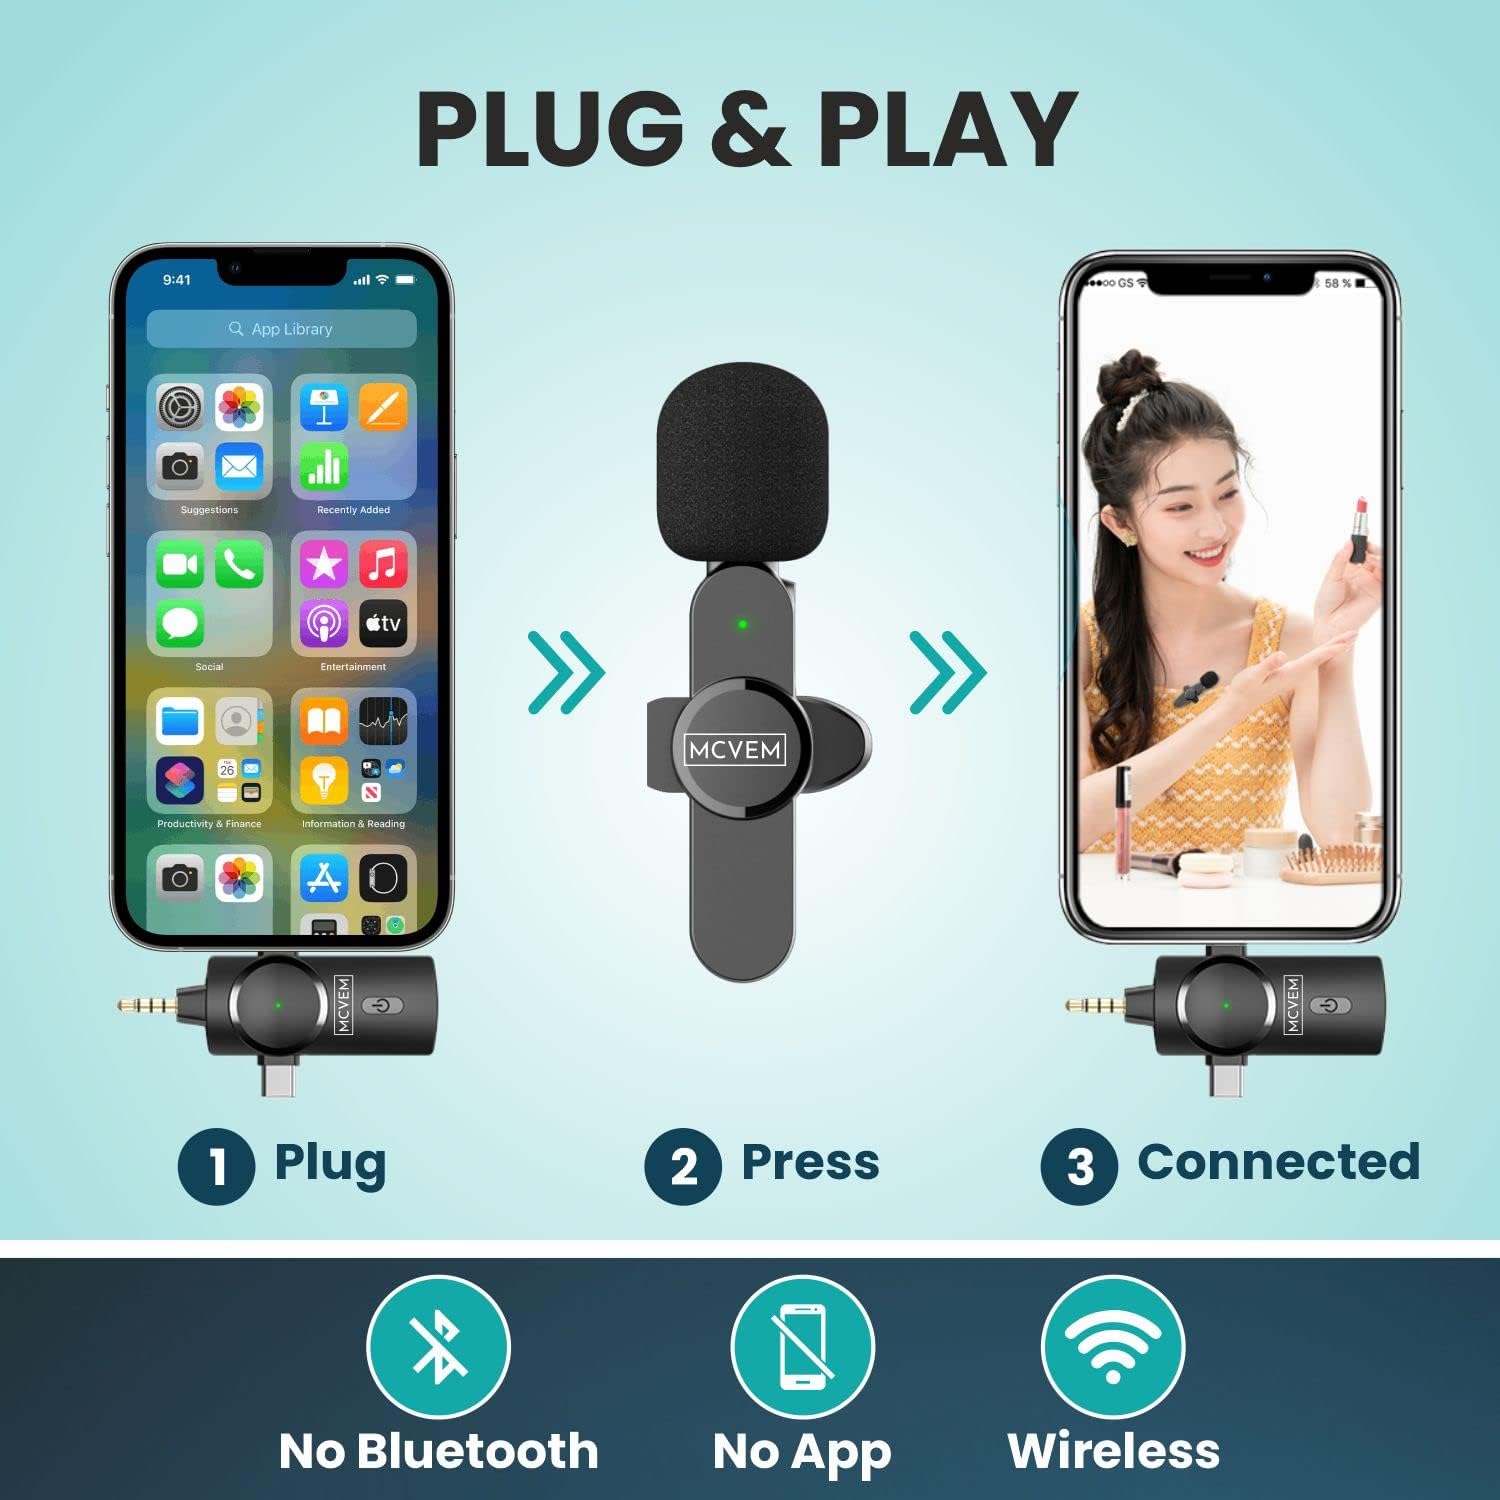 Micrófono de solapa Lavalier inalámbrico dual para iPhone, Android, cámara  2 micrófonos inalámbricos Plug and Play Chip de reducción de ruido de 2.4